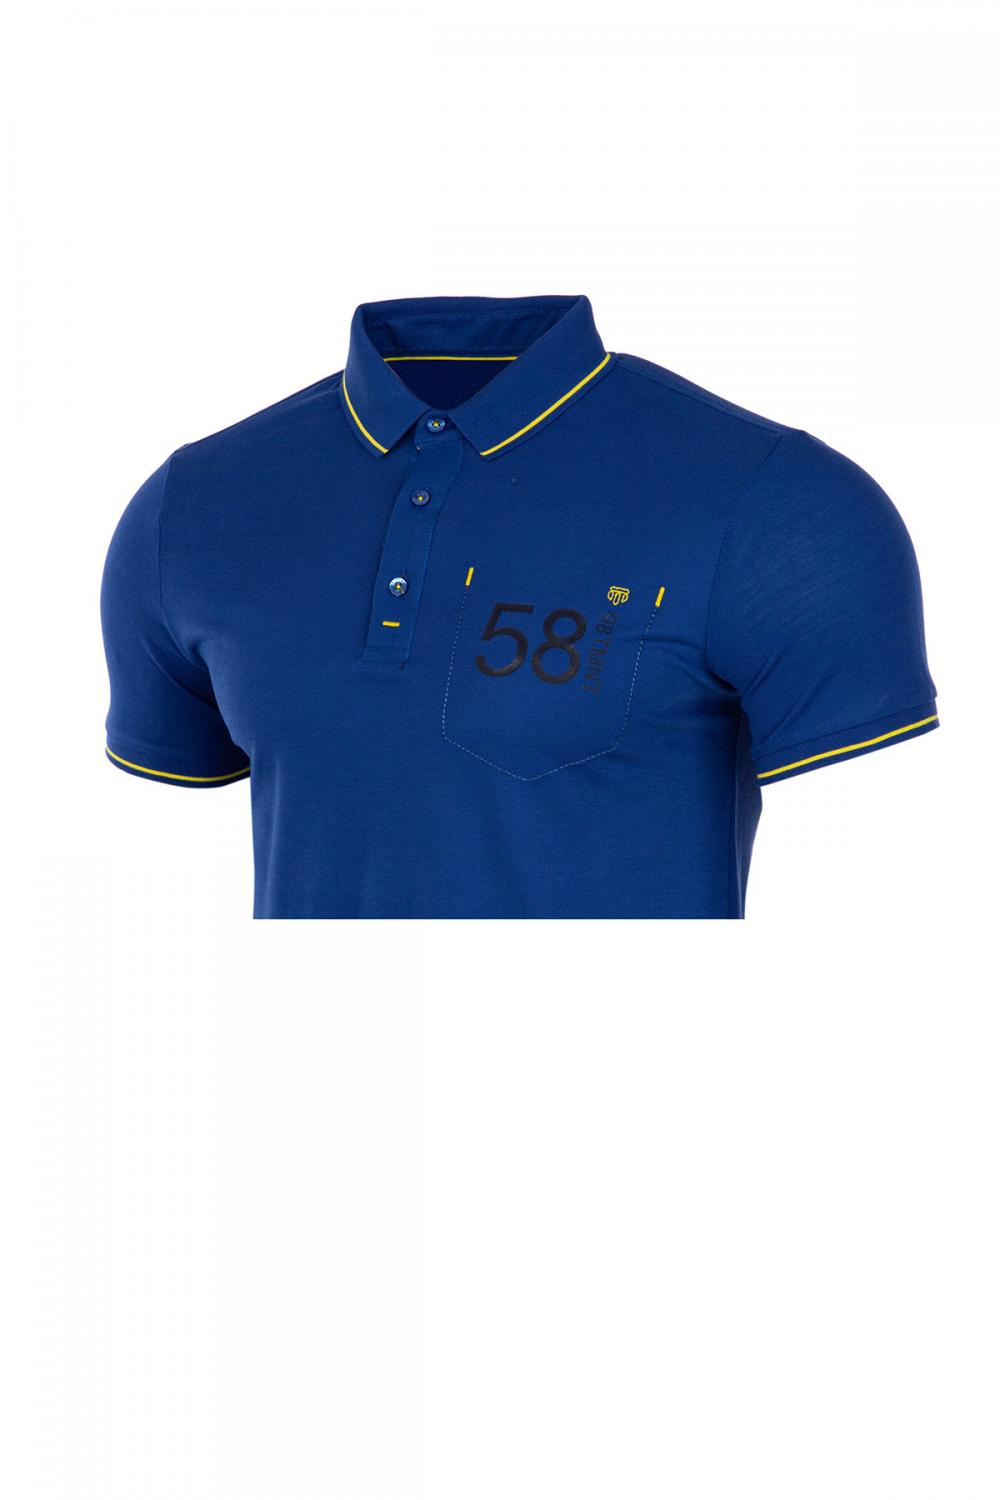 Big Sizes Men Polo Collar  Button Stripe Pocket PK T-Shirt  SIZES-,3XL,4XL,5XL 